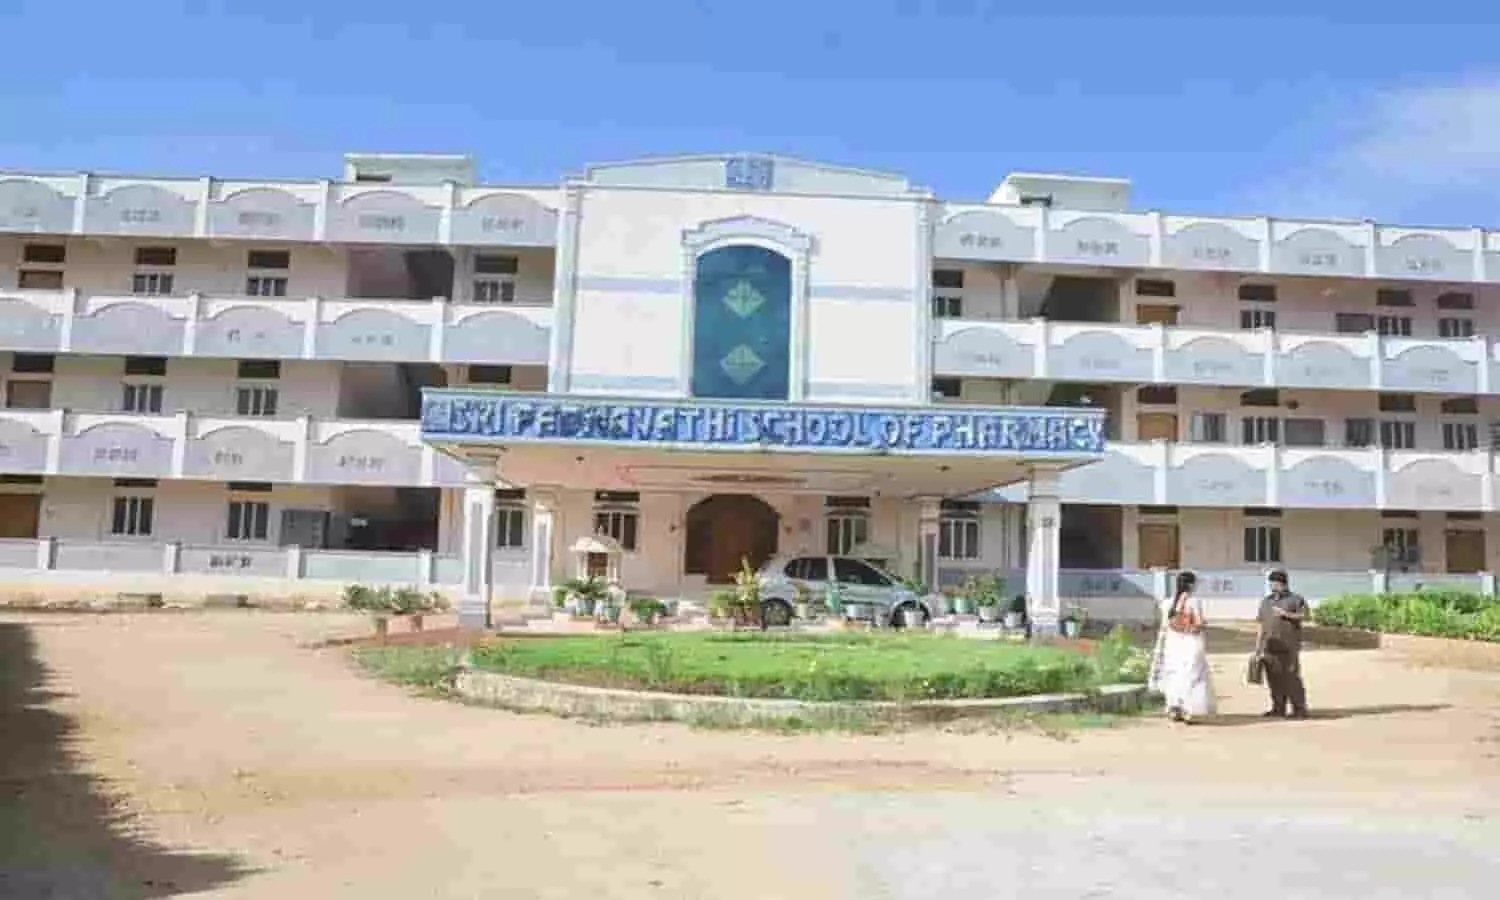 Sri Padmavathi School Of Pharmacy: स्कूल में छुट्टी को लेकर अपडेट